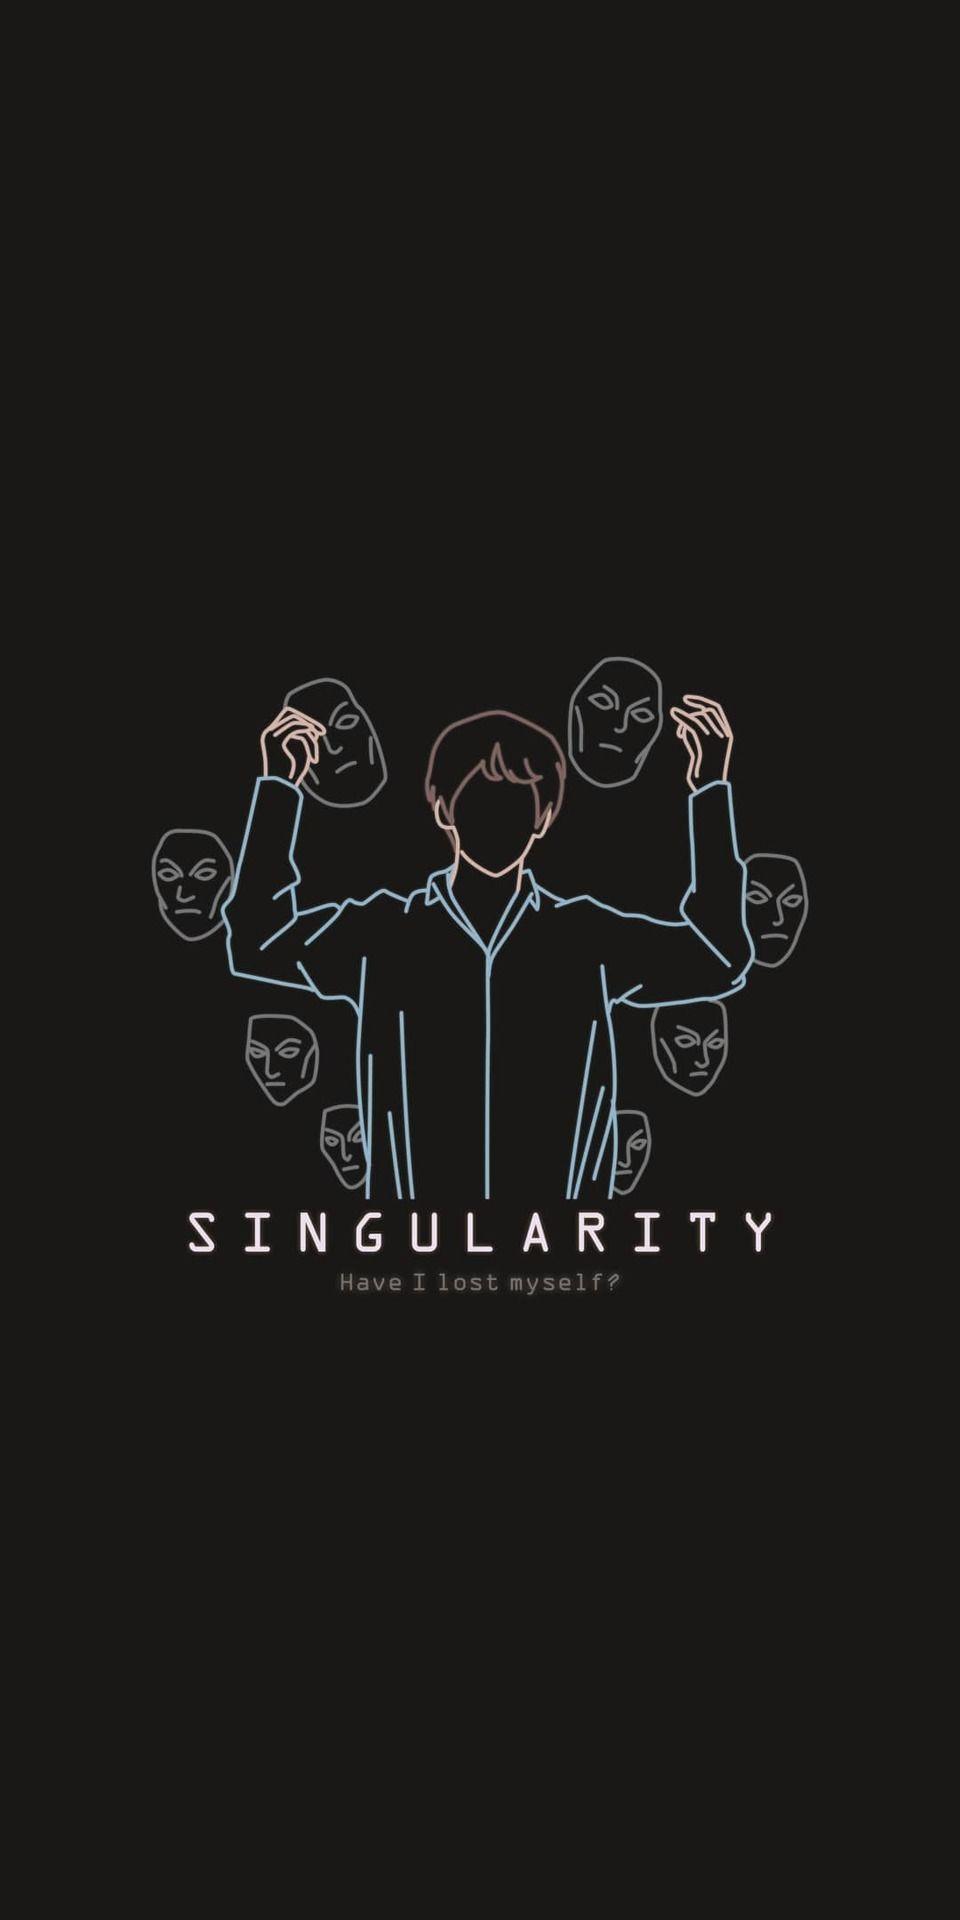 Singularity. V. Wallpaper. Bts ❤️. Bts wallpaper lyrics, Bts